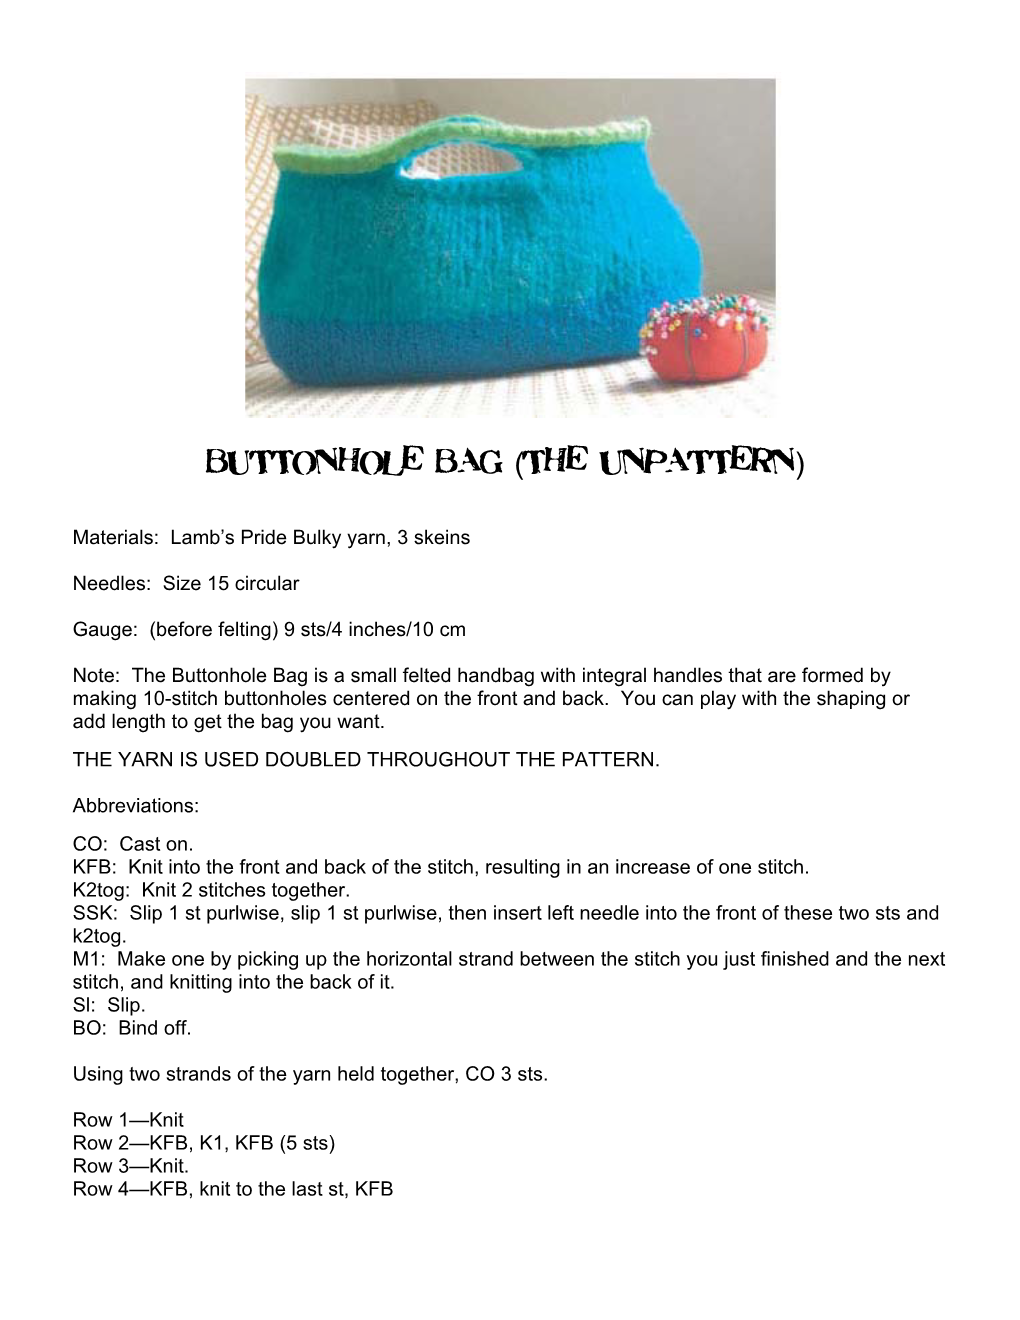 Buttonhole Bag (The Unpattern)